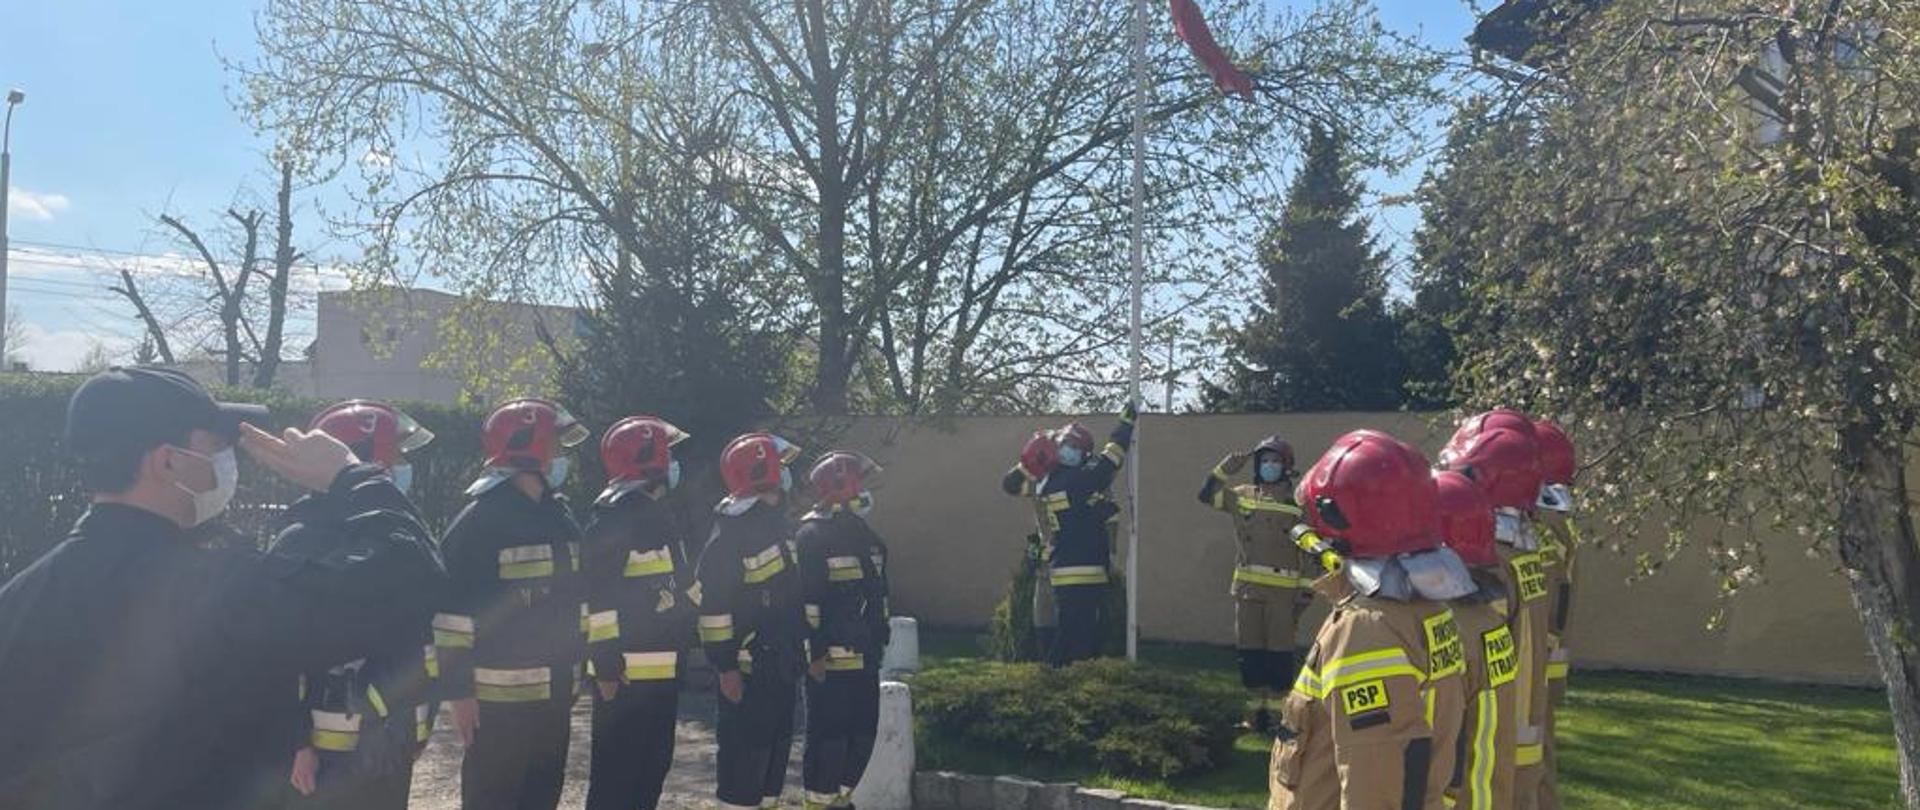 Opuszczenie flagi do połowy masztu przez strażaków z JRG 3 Wrocław